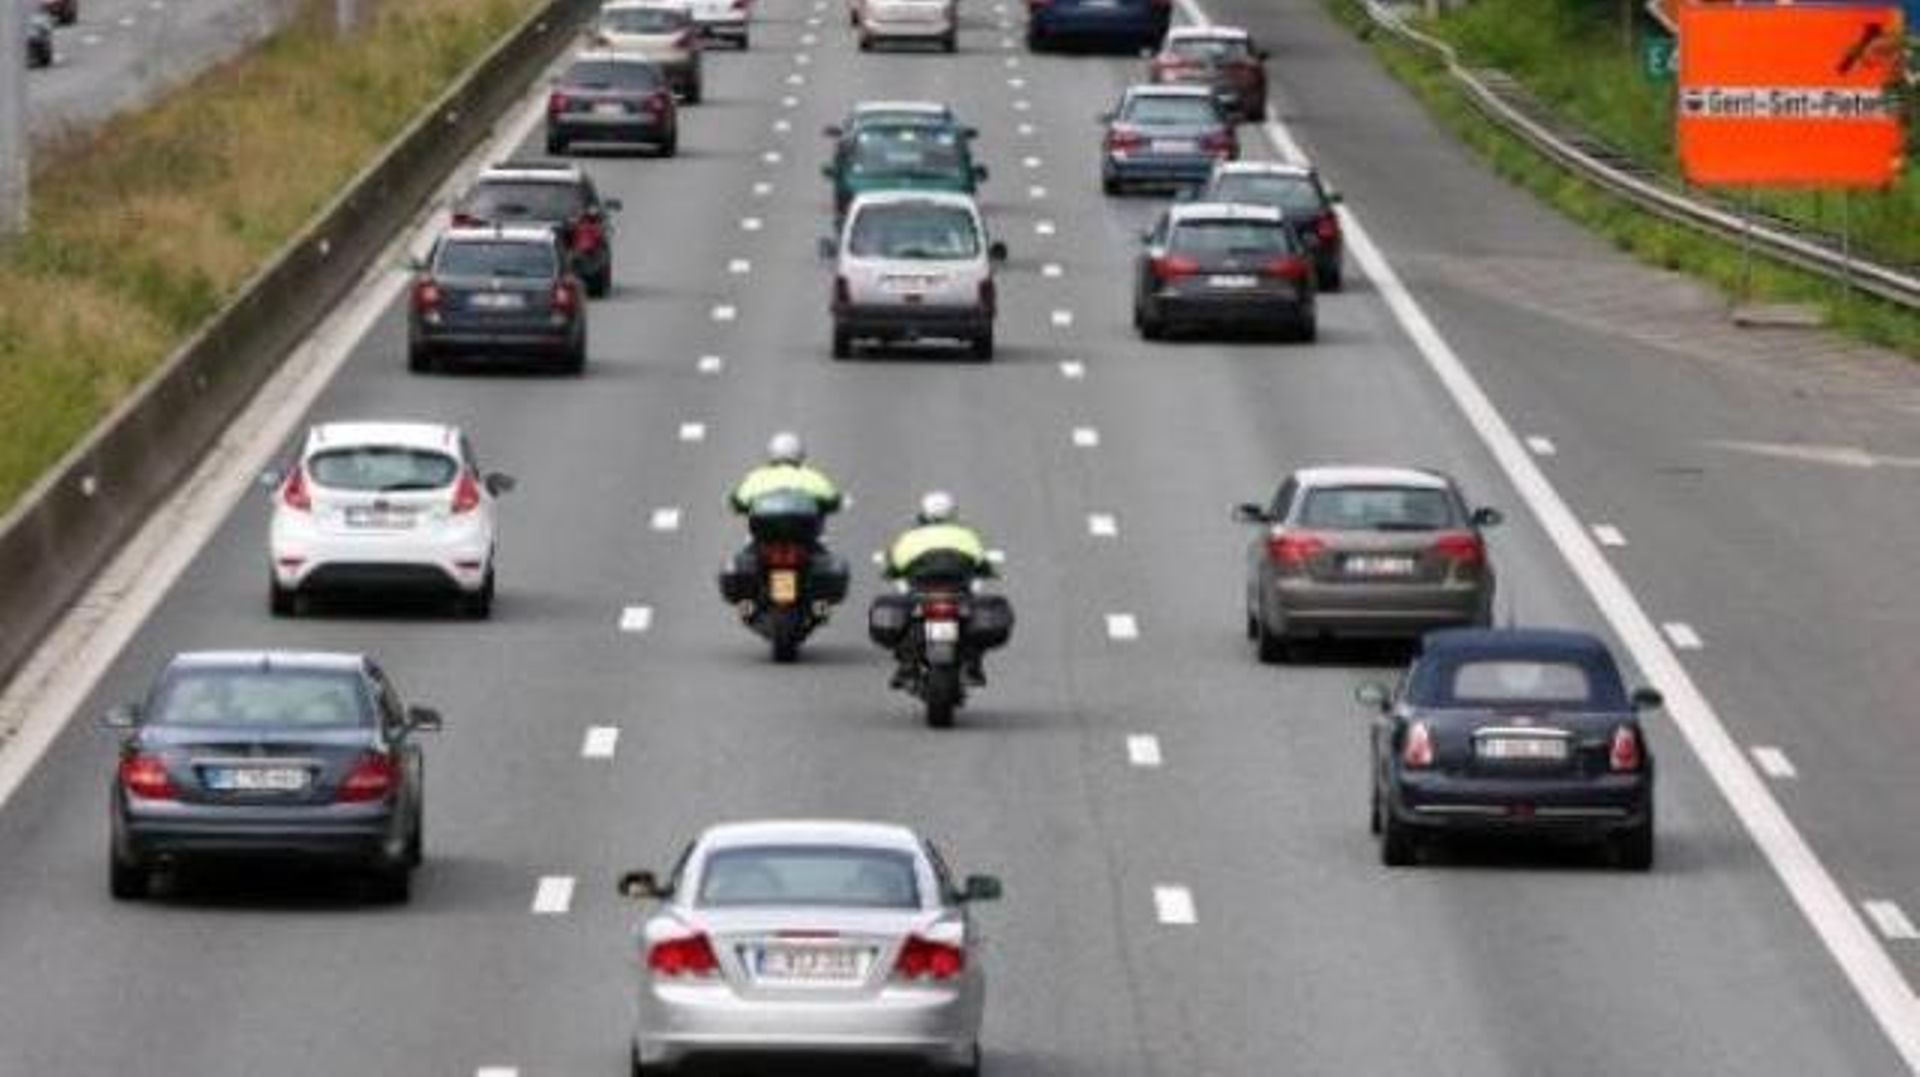 Les motards commettent plus d'excès de vitesse que les automobilistes (illustration)